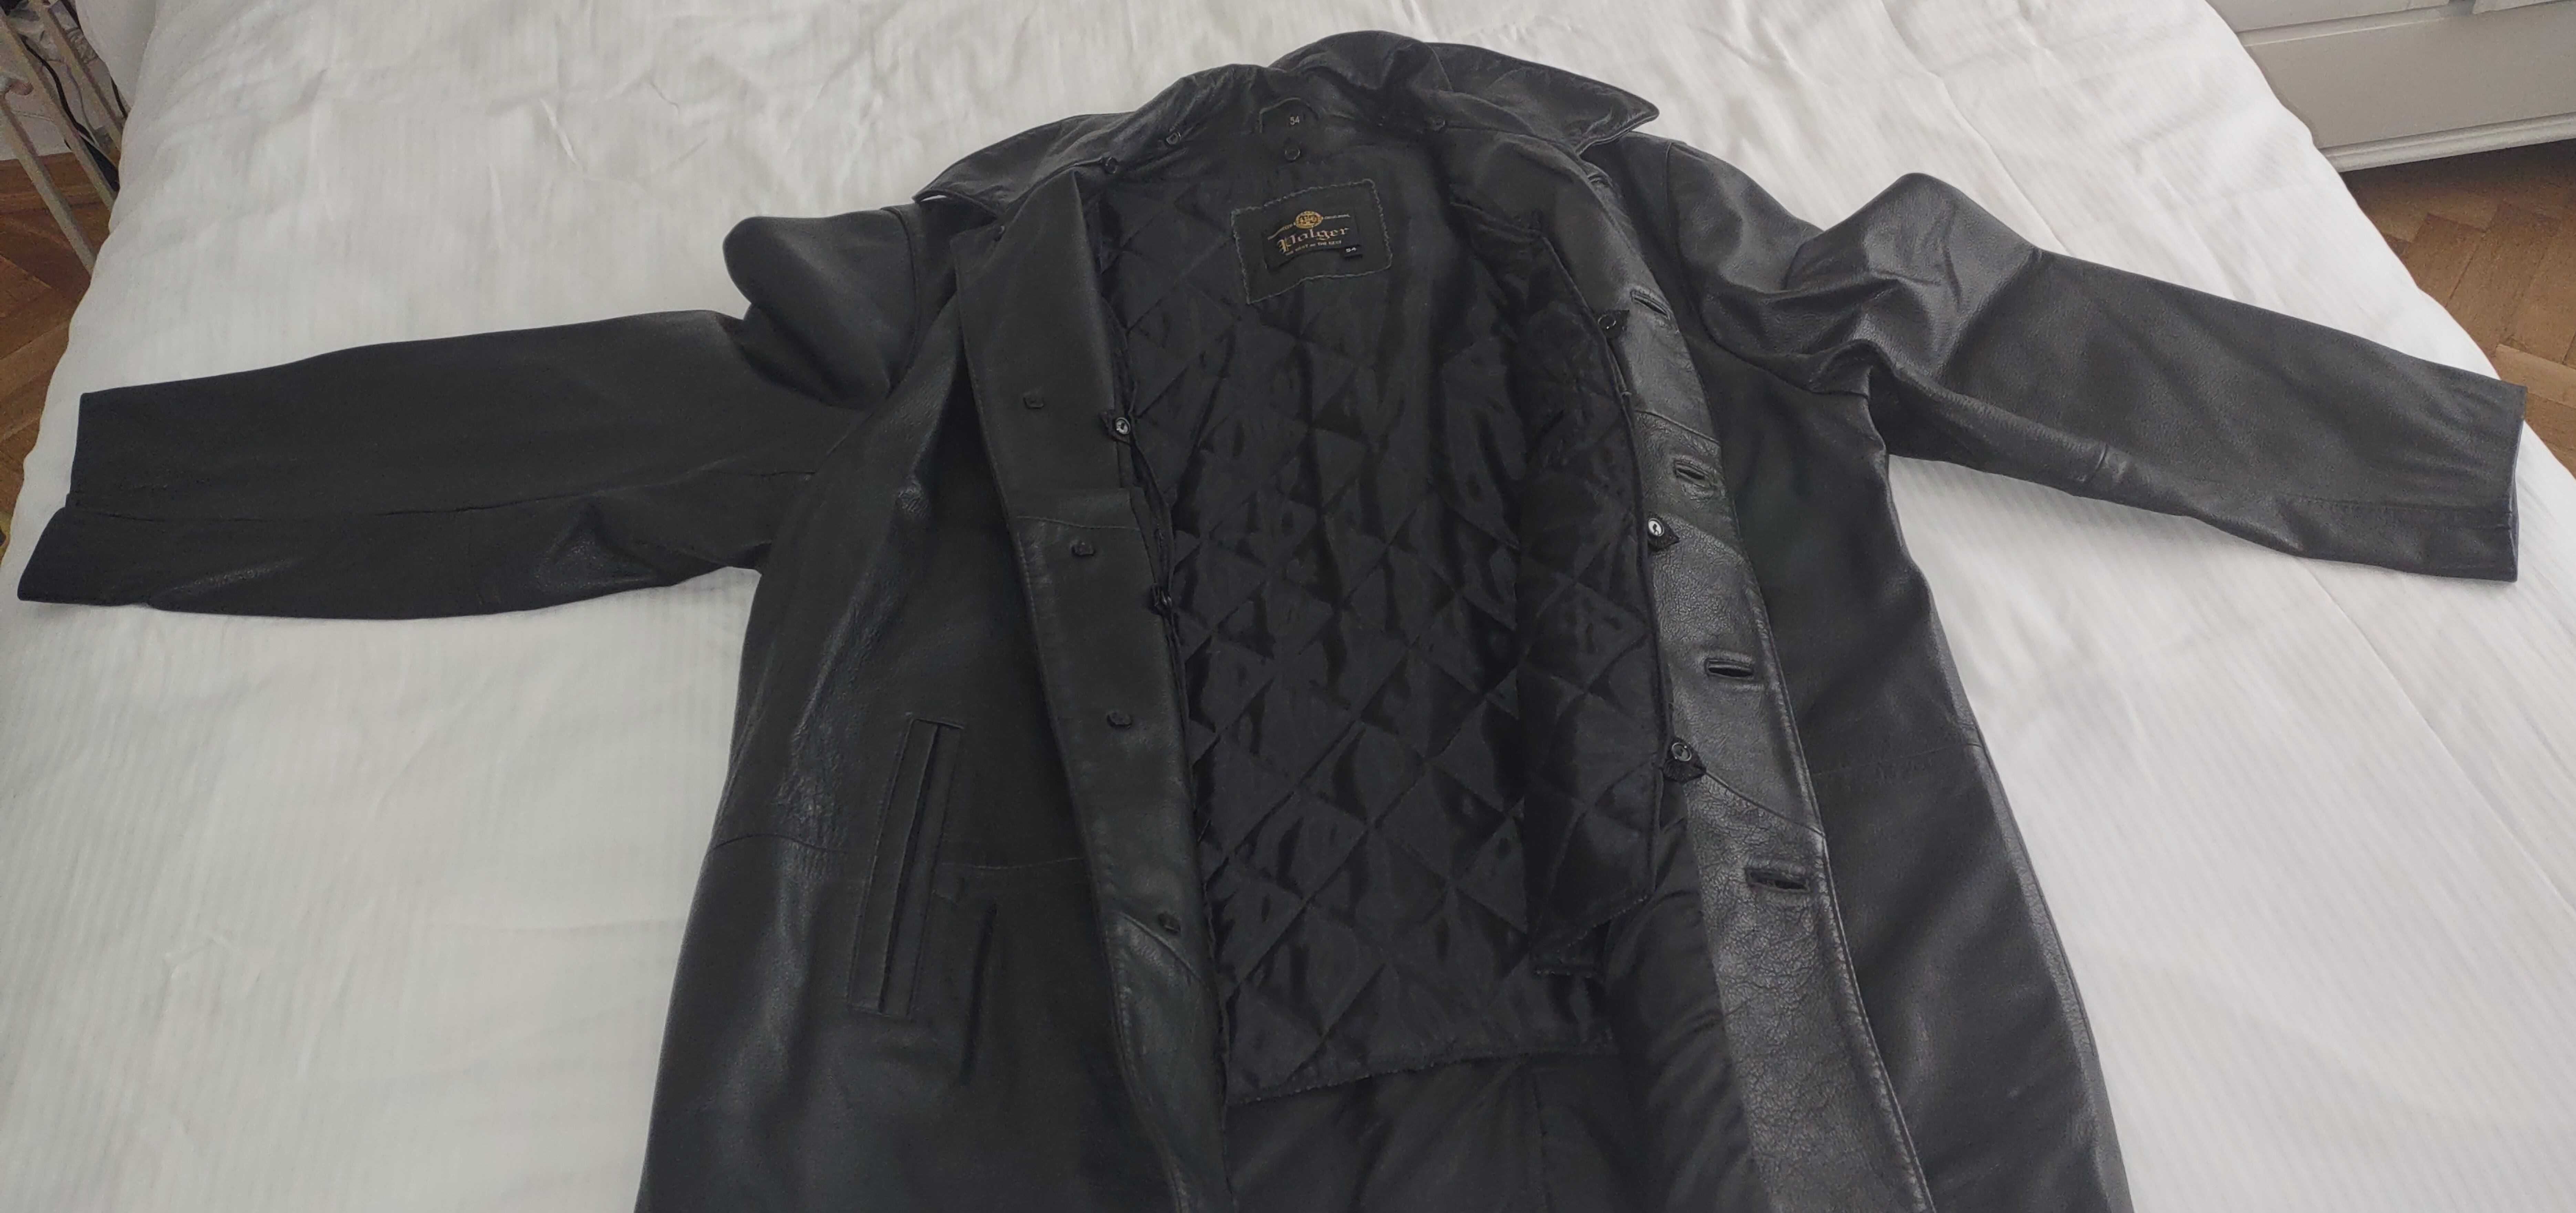 kurtka skórzana czarna z podpinką, męska, używana, rozmiar 54